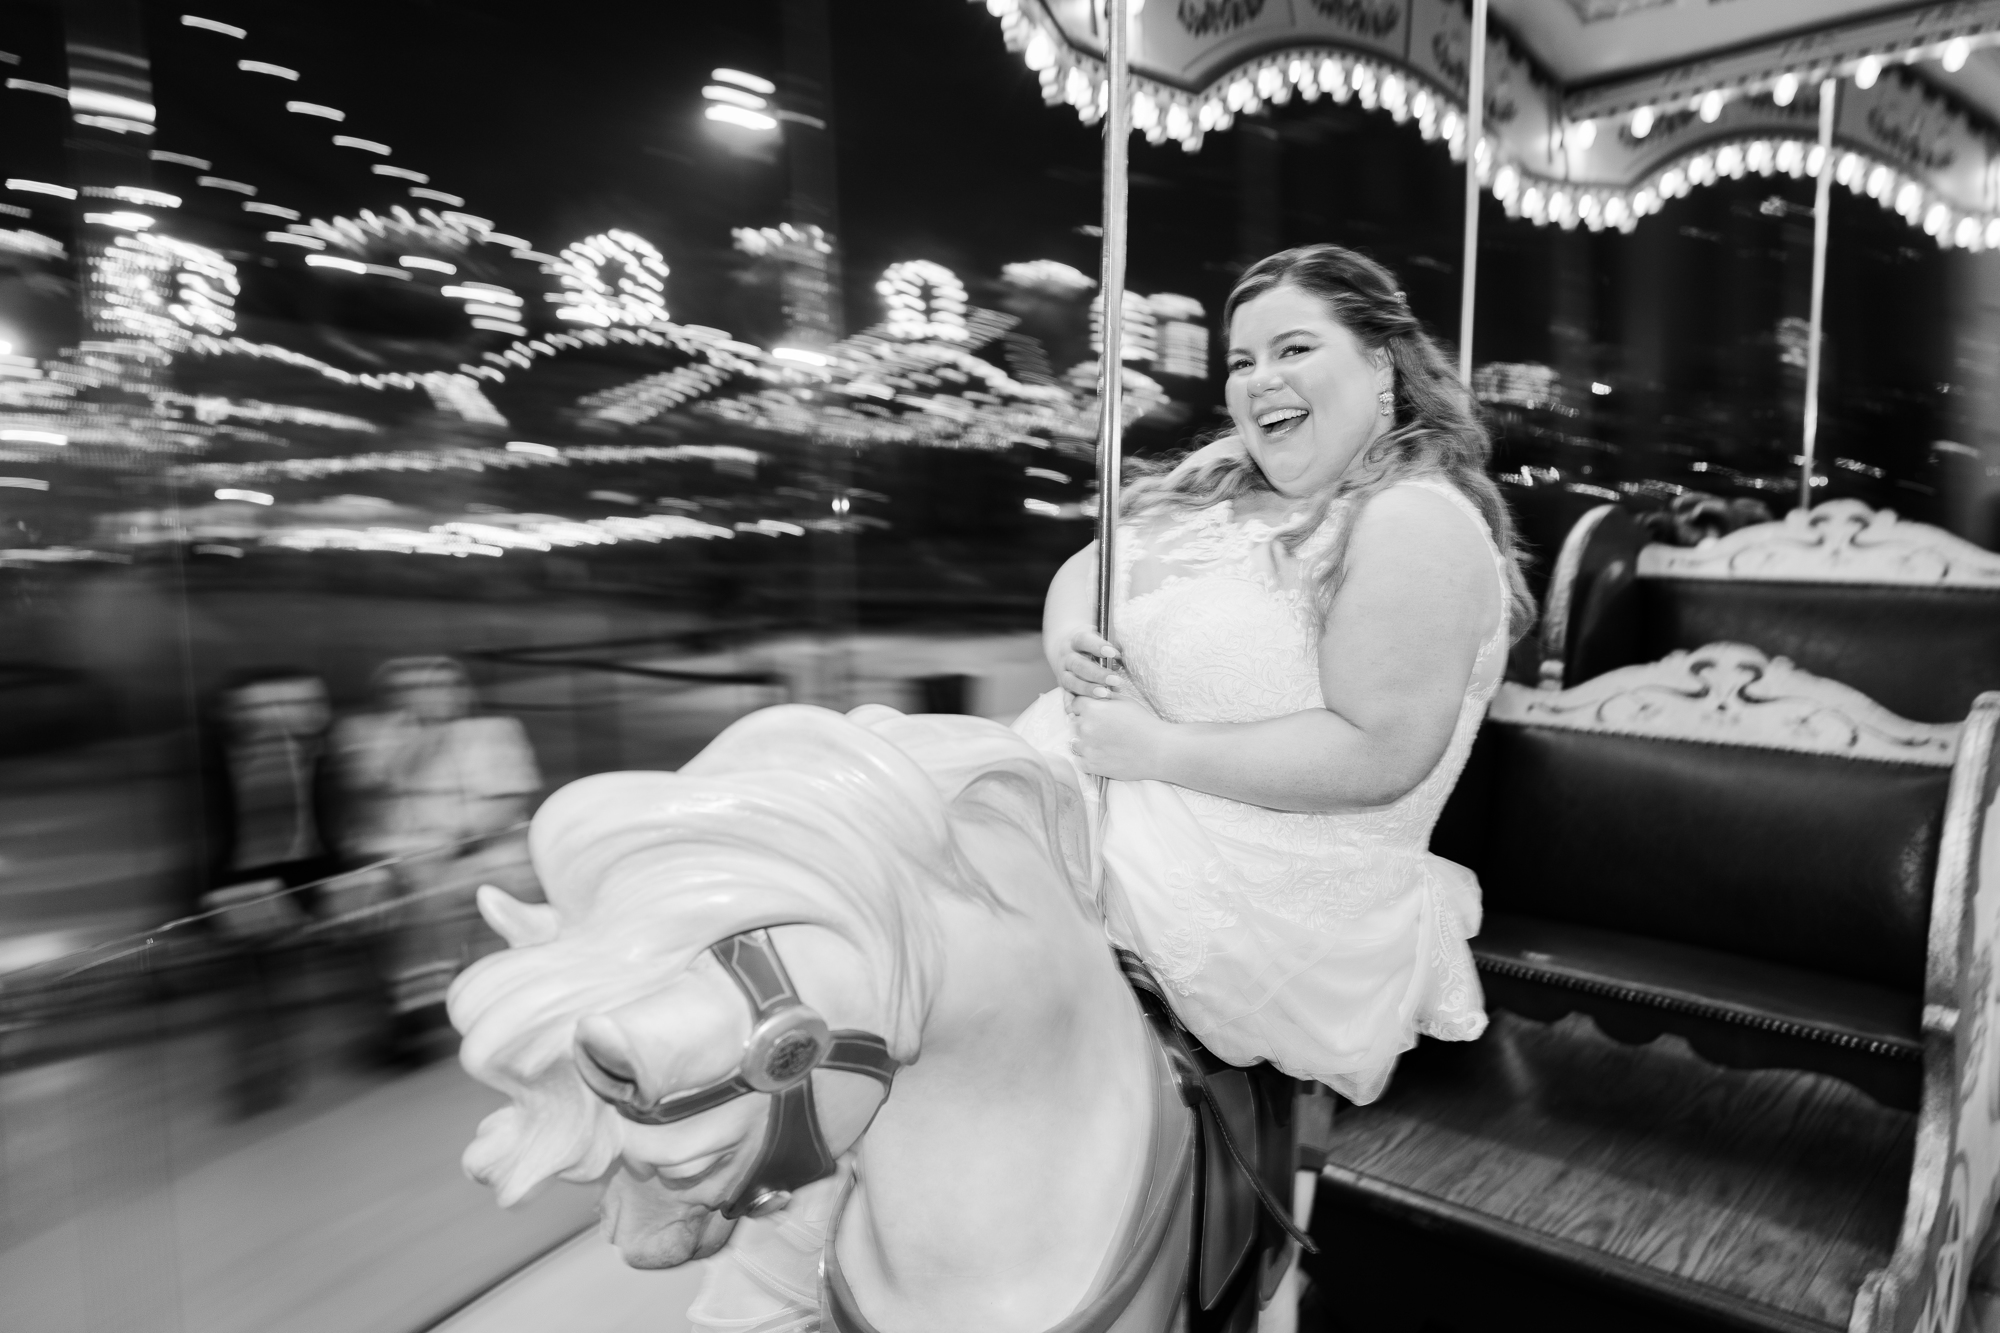 Beautiful Jane's Carousel Wedding in New York